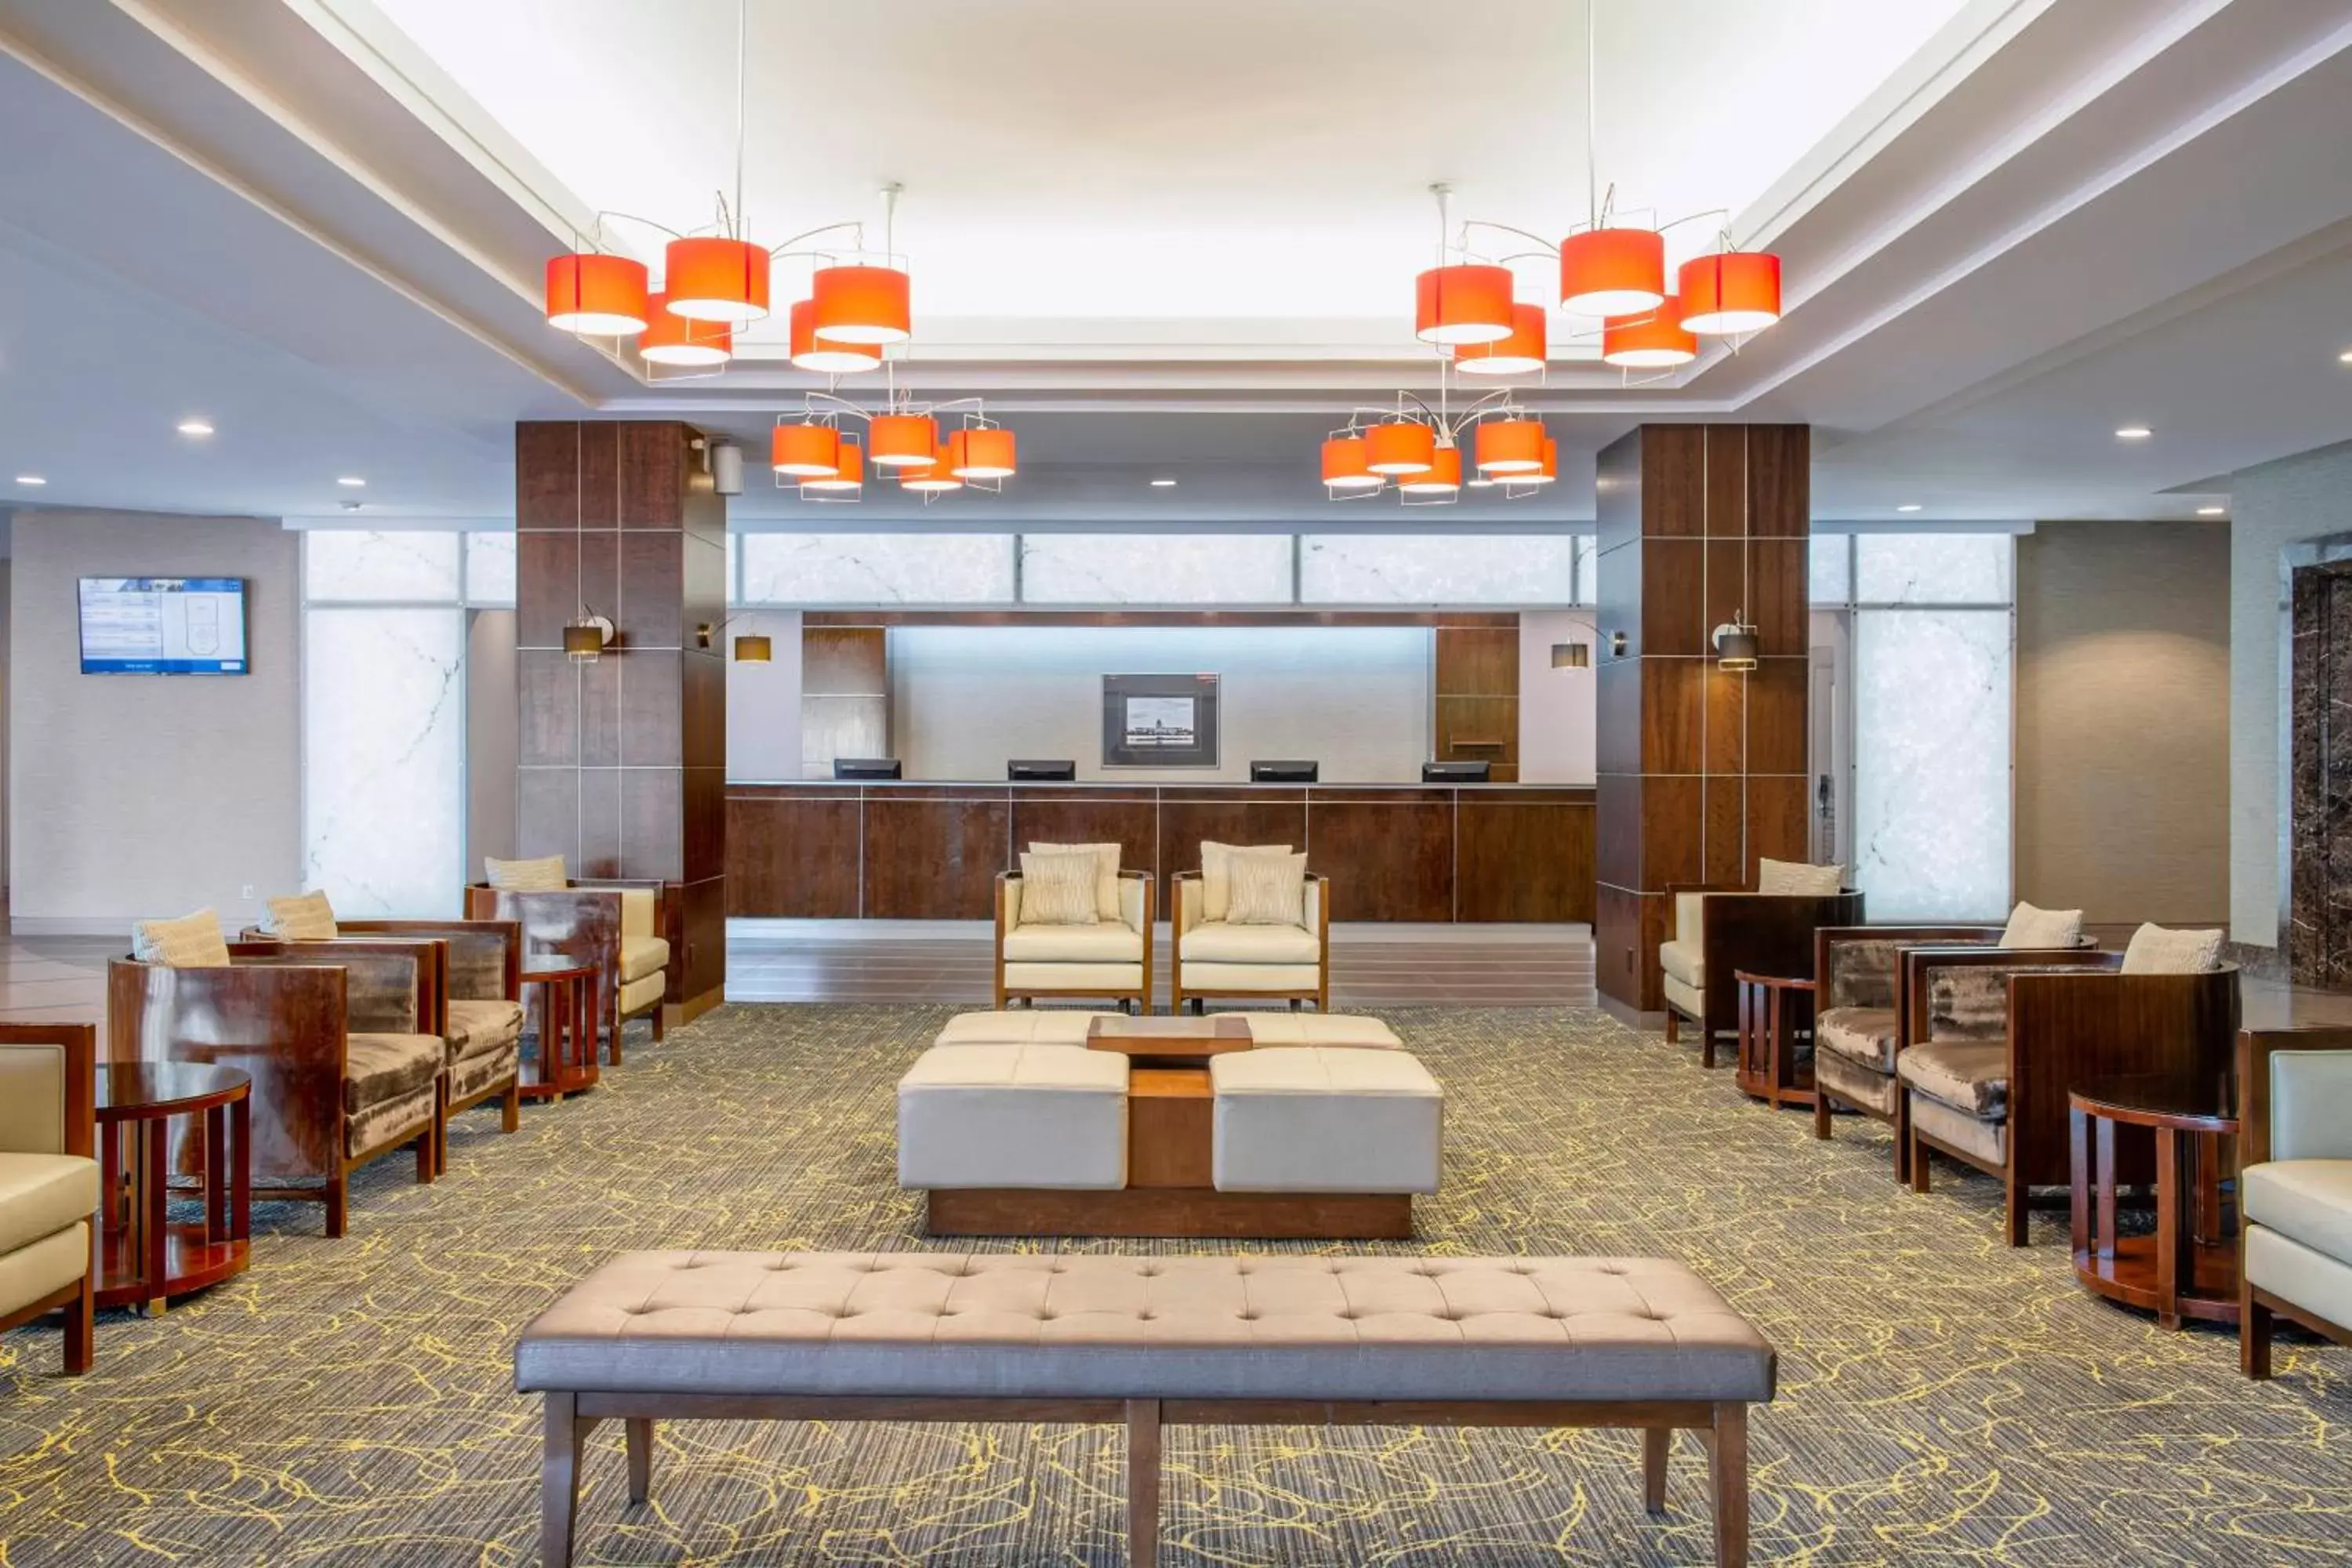 Lobby or reception in Delta Hotels by Marriott Regina